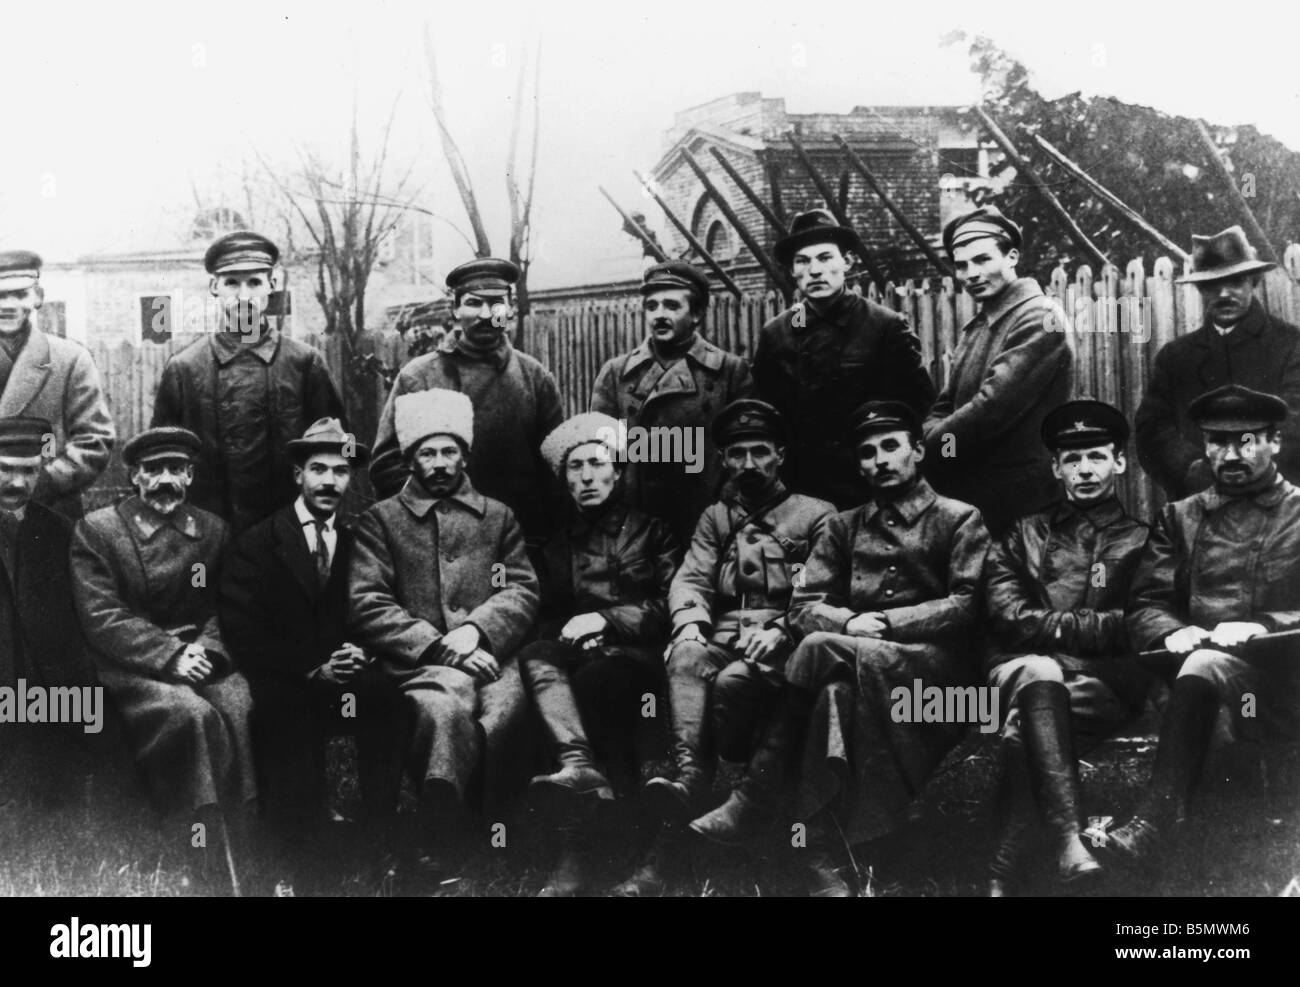 Révolution d'octobre, le commandement de l'Armée Rouge Octobre 78 Nov 2526 Oct O S 1917 le commandement de l'Armée Rouge à Moscou Octobre 1917 Photographie Banque D'Images